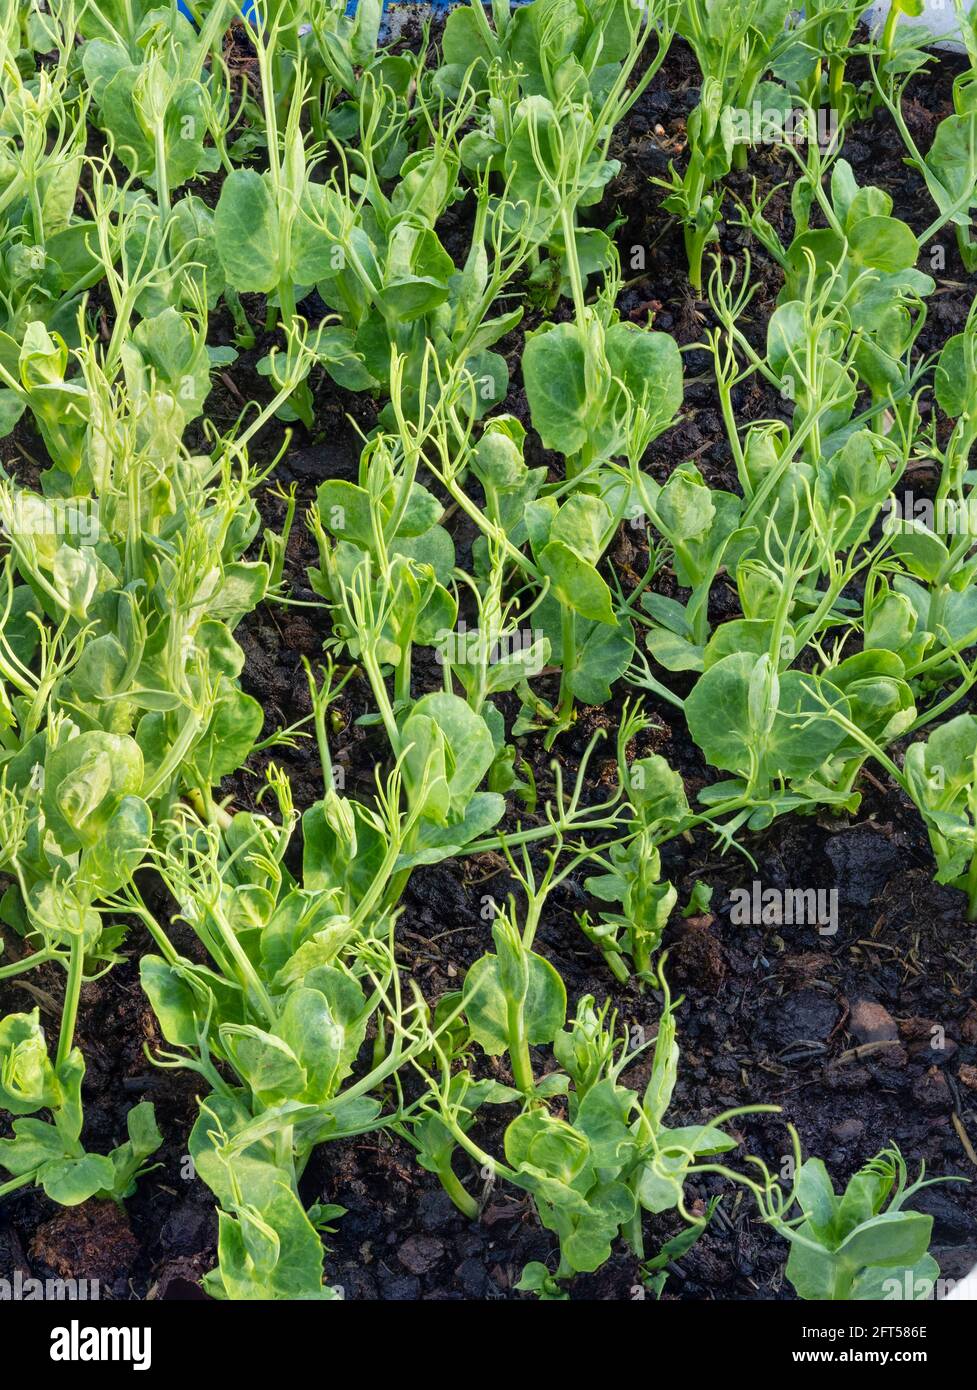 Marrowfat garden peas, Pisum sativum, grown for edible pea sprouts in a small UK kitchen garden Stock Photo